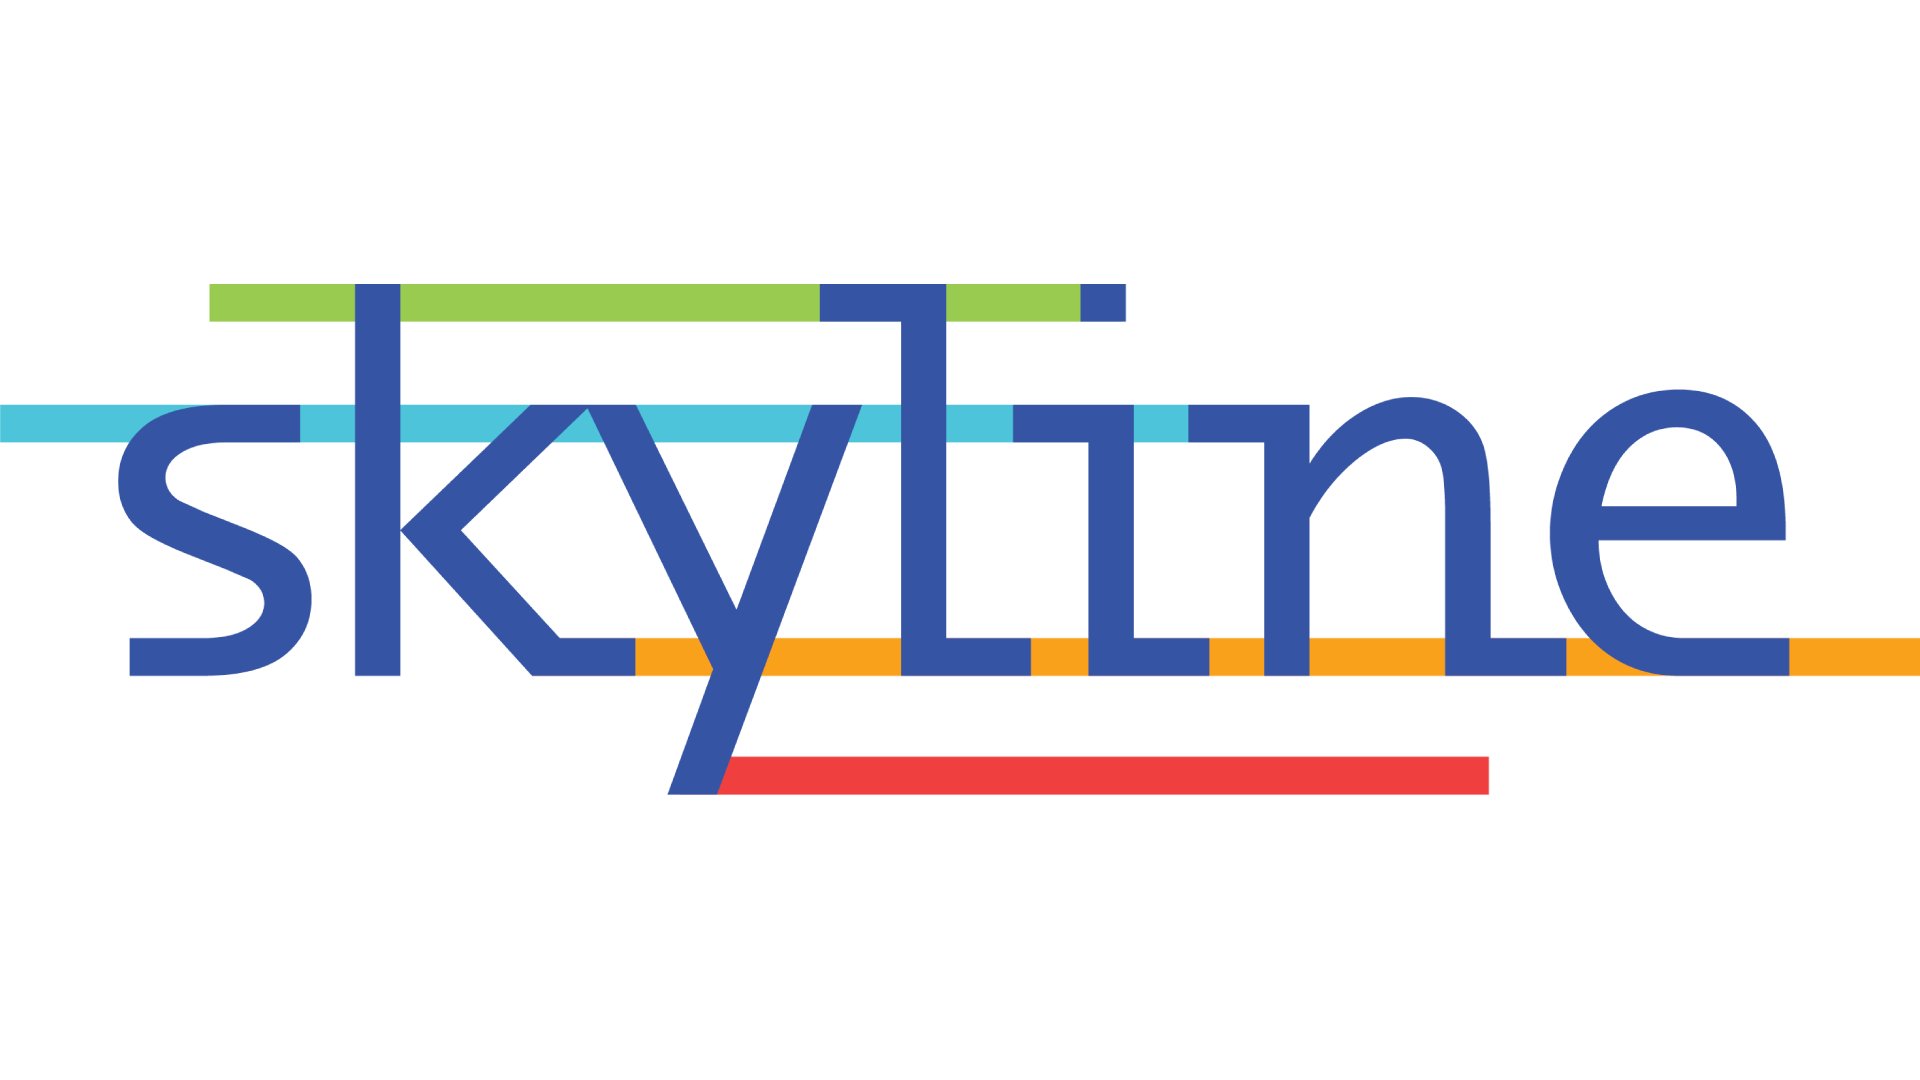 Design skyline logo within 24hr by Amariartwork | Fiverr